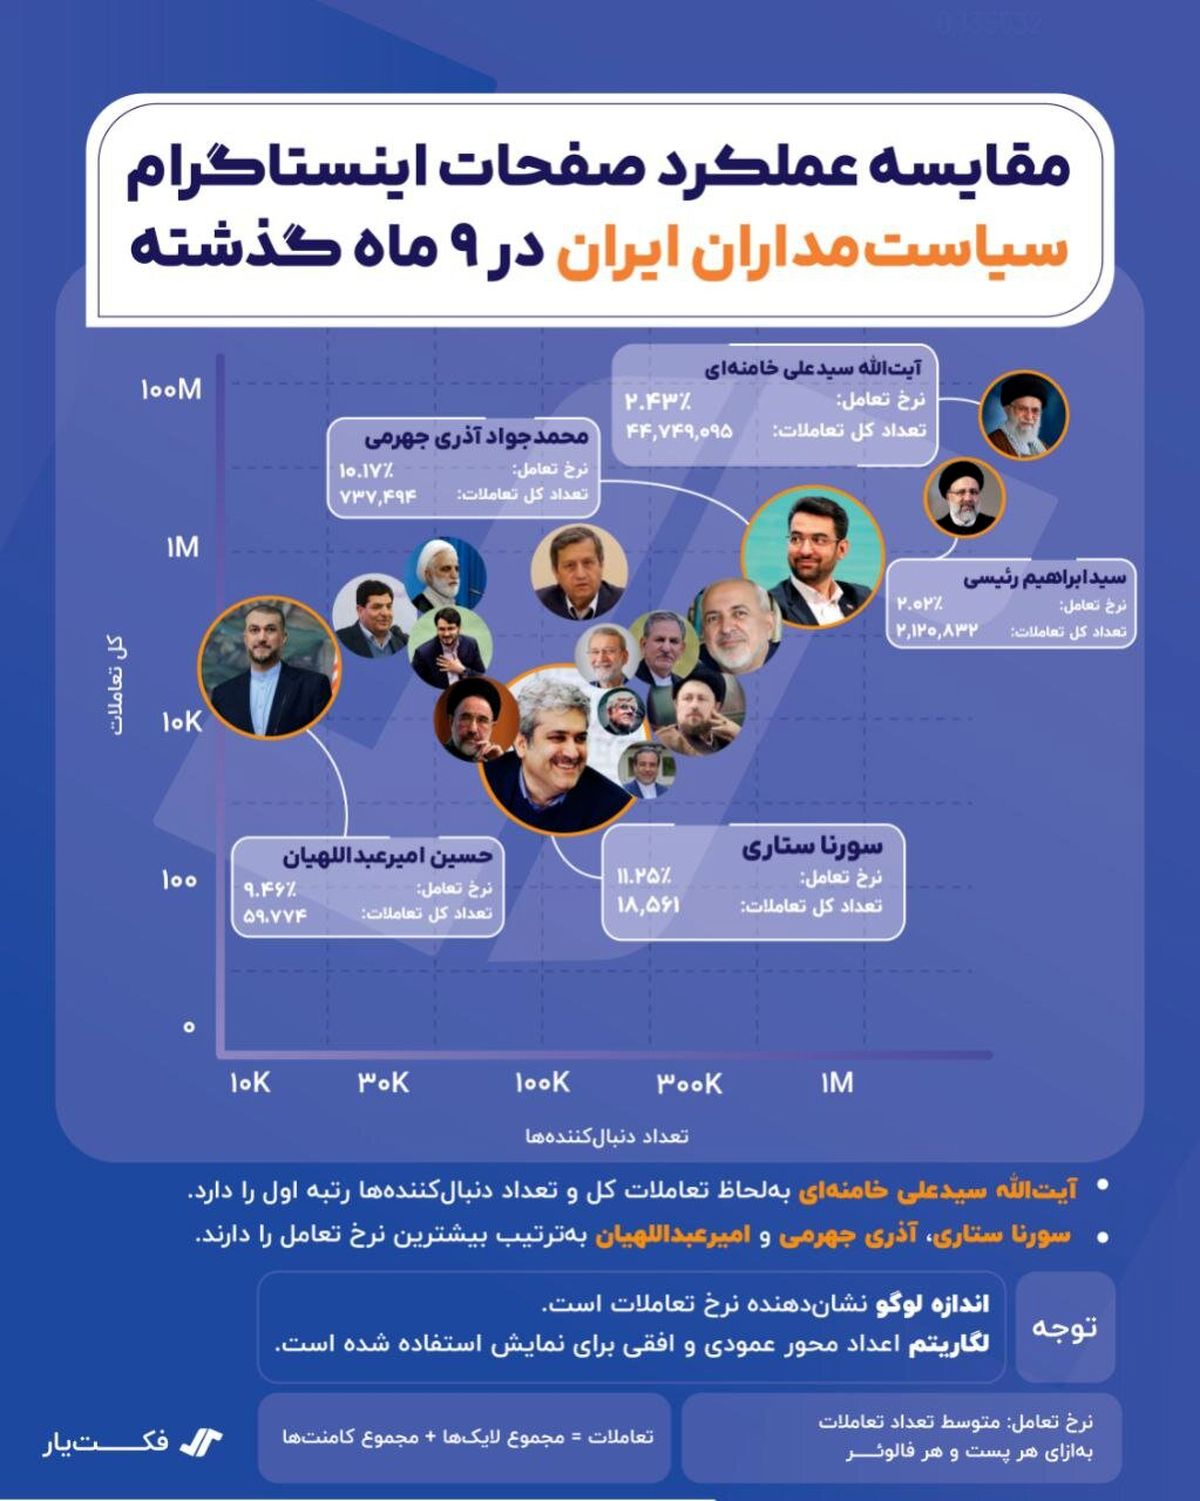 اینفوگرافی؛ مقایسه عملکرد صفحات اینستاگرام سیاستمداران ایران در ۹ ماه گذشته 